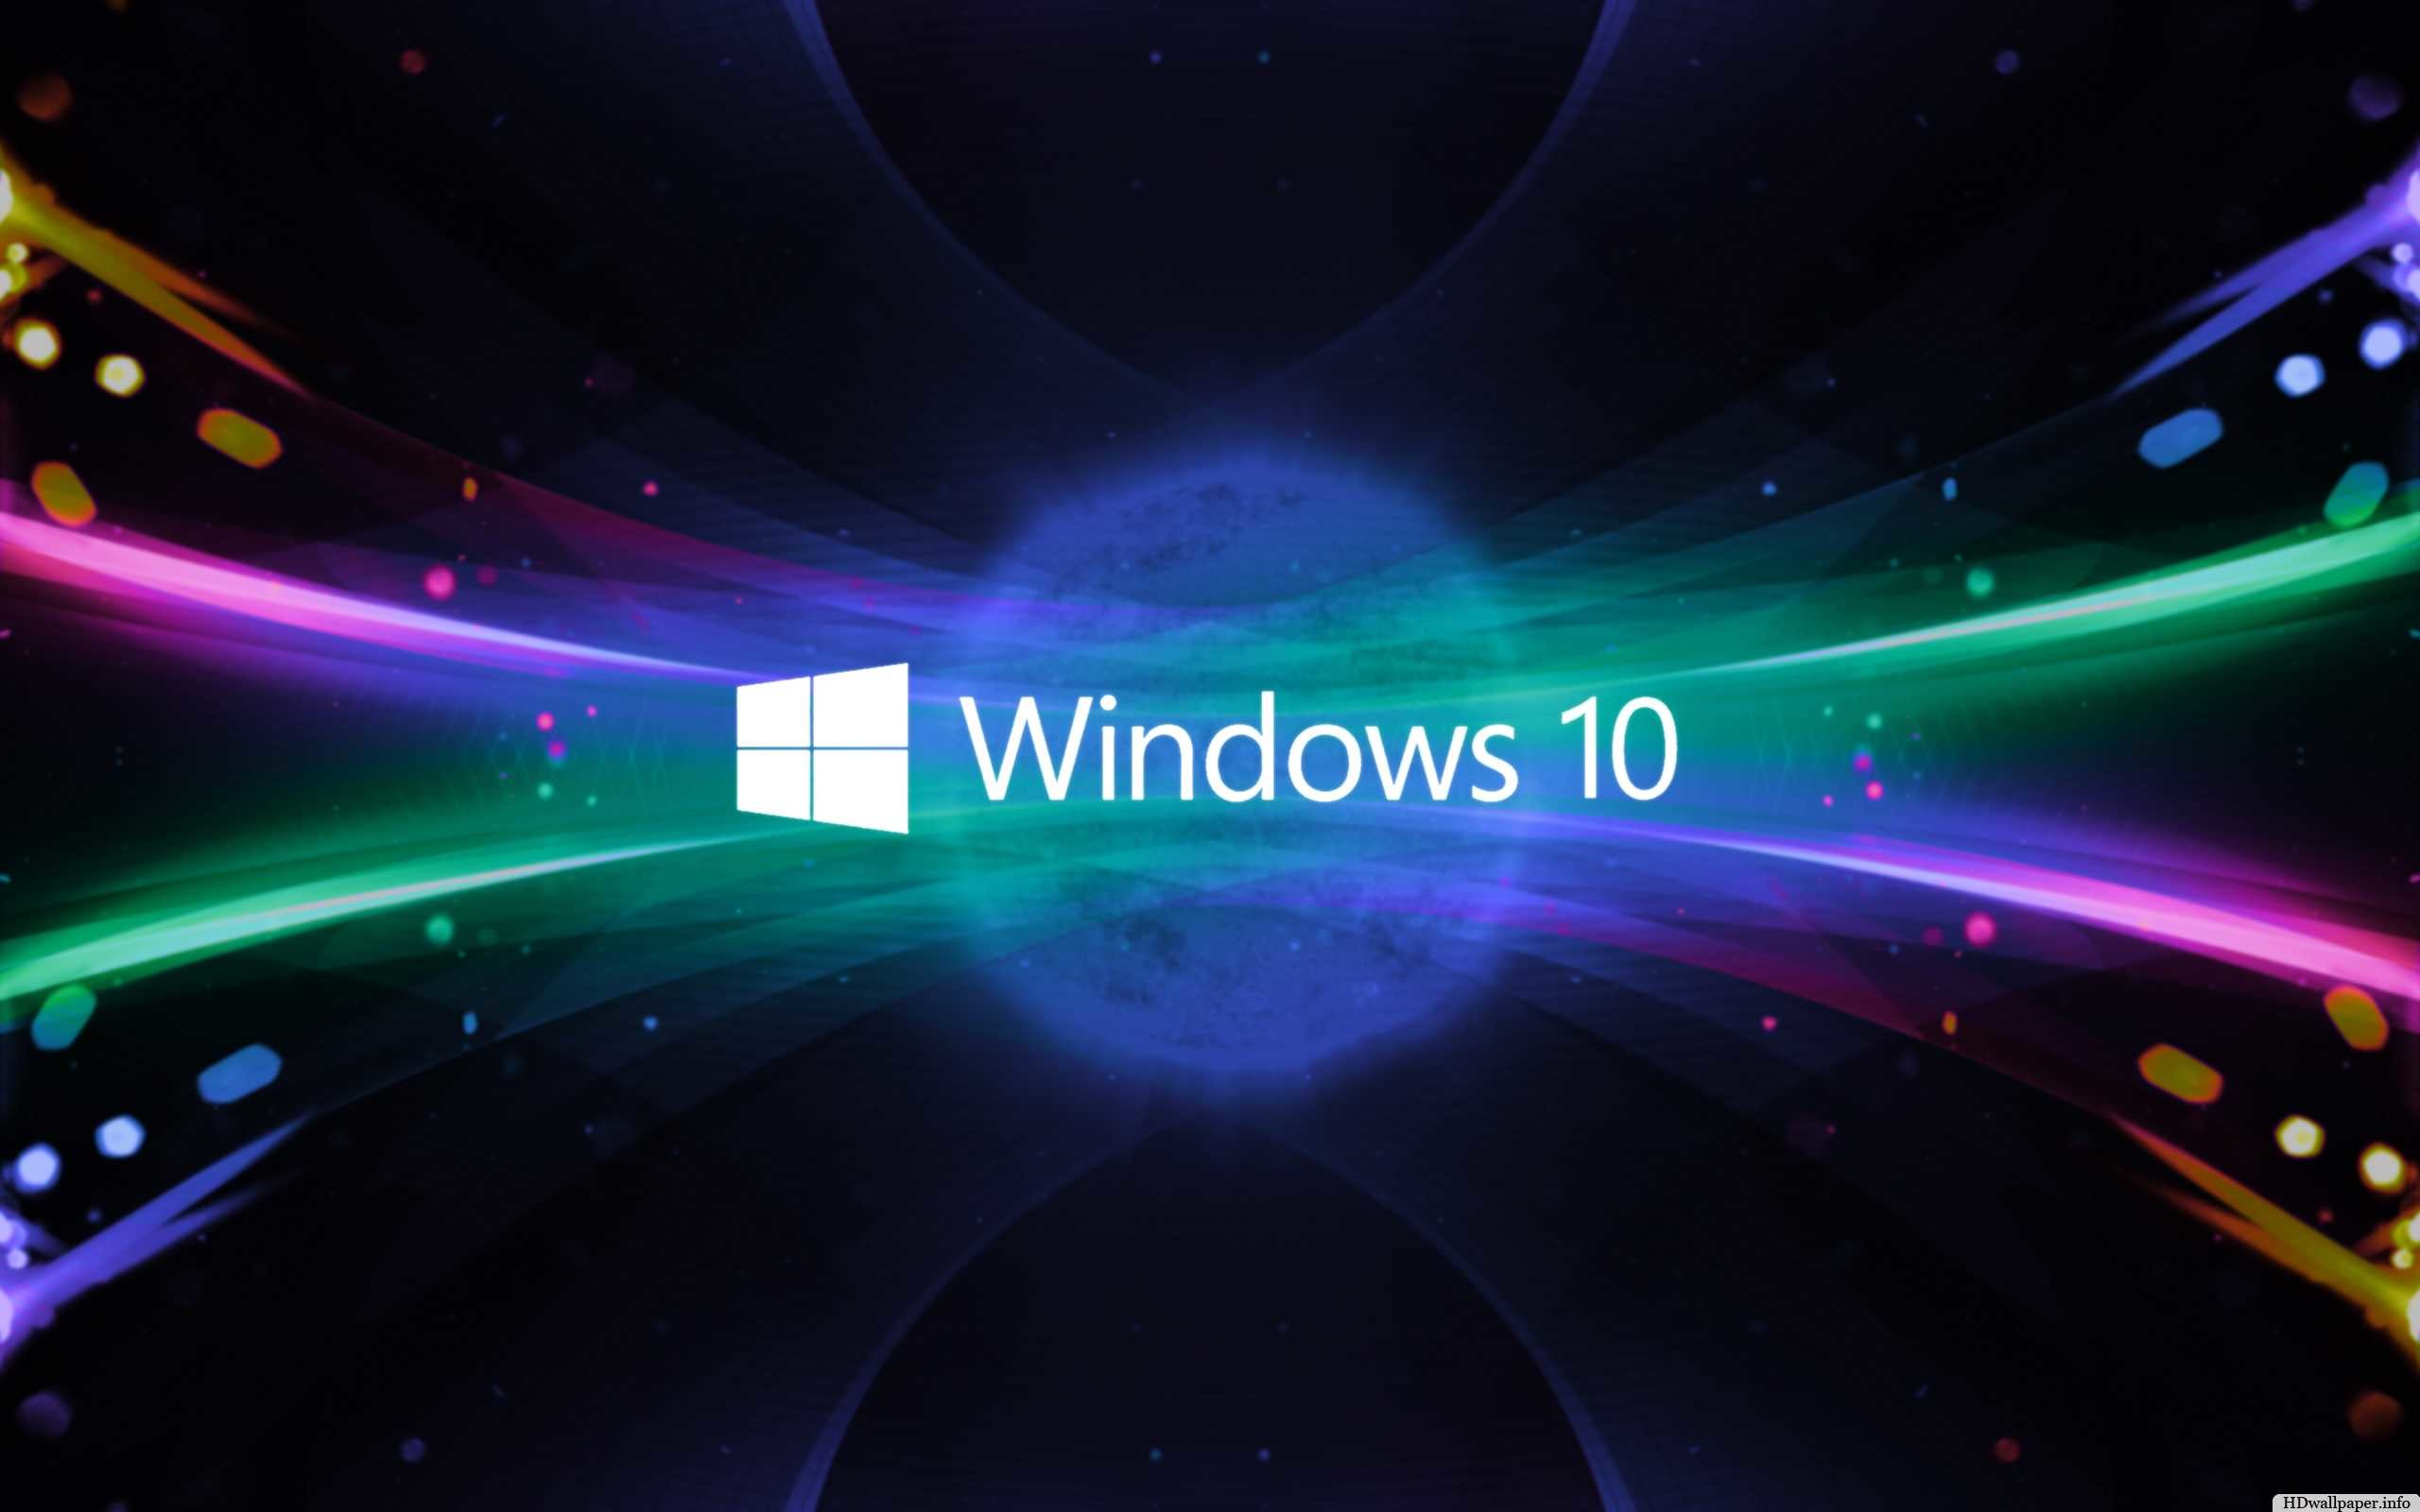 Hình nền 3D miễn phí cho Windows 10- Sự kết hợp giữa công nghệ đỉnh cao và thiên nhiên tuyệt đẹp sẽ đưa bạn đến một thế giới hoàn toàn mới. Tải ngay 3D Wallpapers miễn phí để trang trí cho máy tính Windows 10 của bạn.